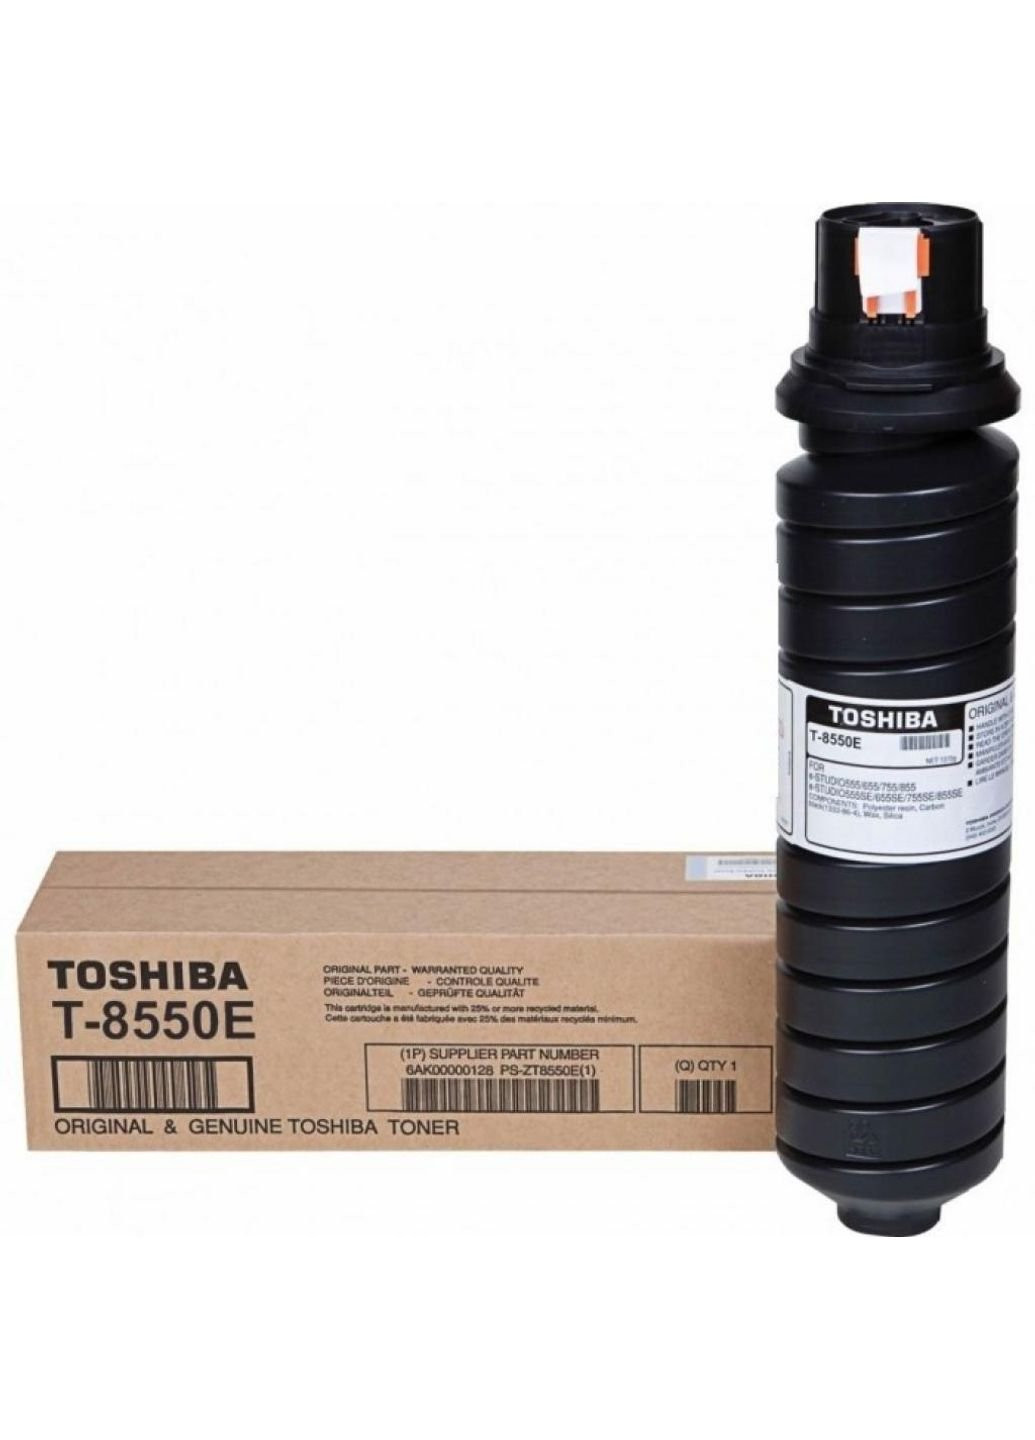 Тонер-картридж (6AK00000128) Toshiba t-8550e black 62.4k для 555/655/755 (247614486)